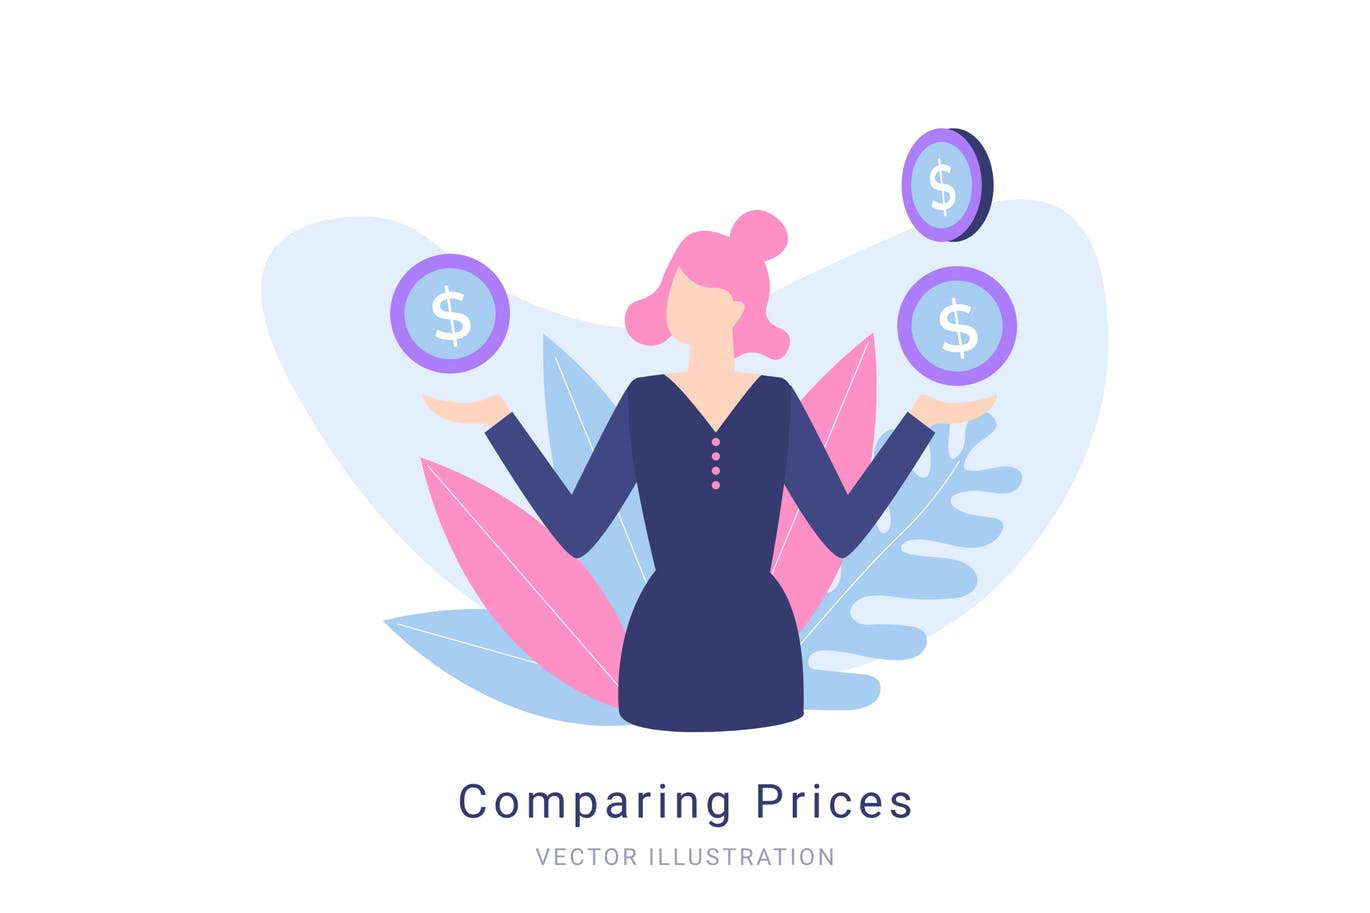 价格比较概念矢量插画蚂蚁素材精选素材 Comparing Prices Vector Illustration插图